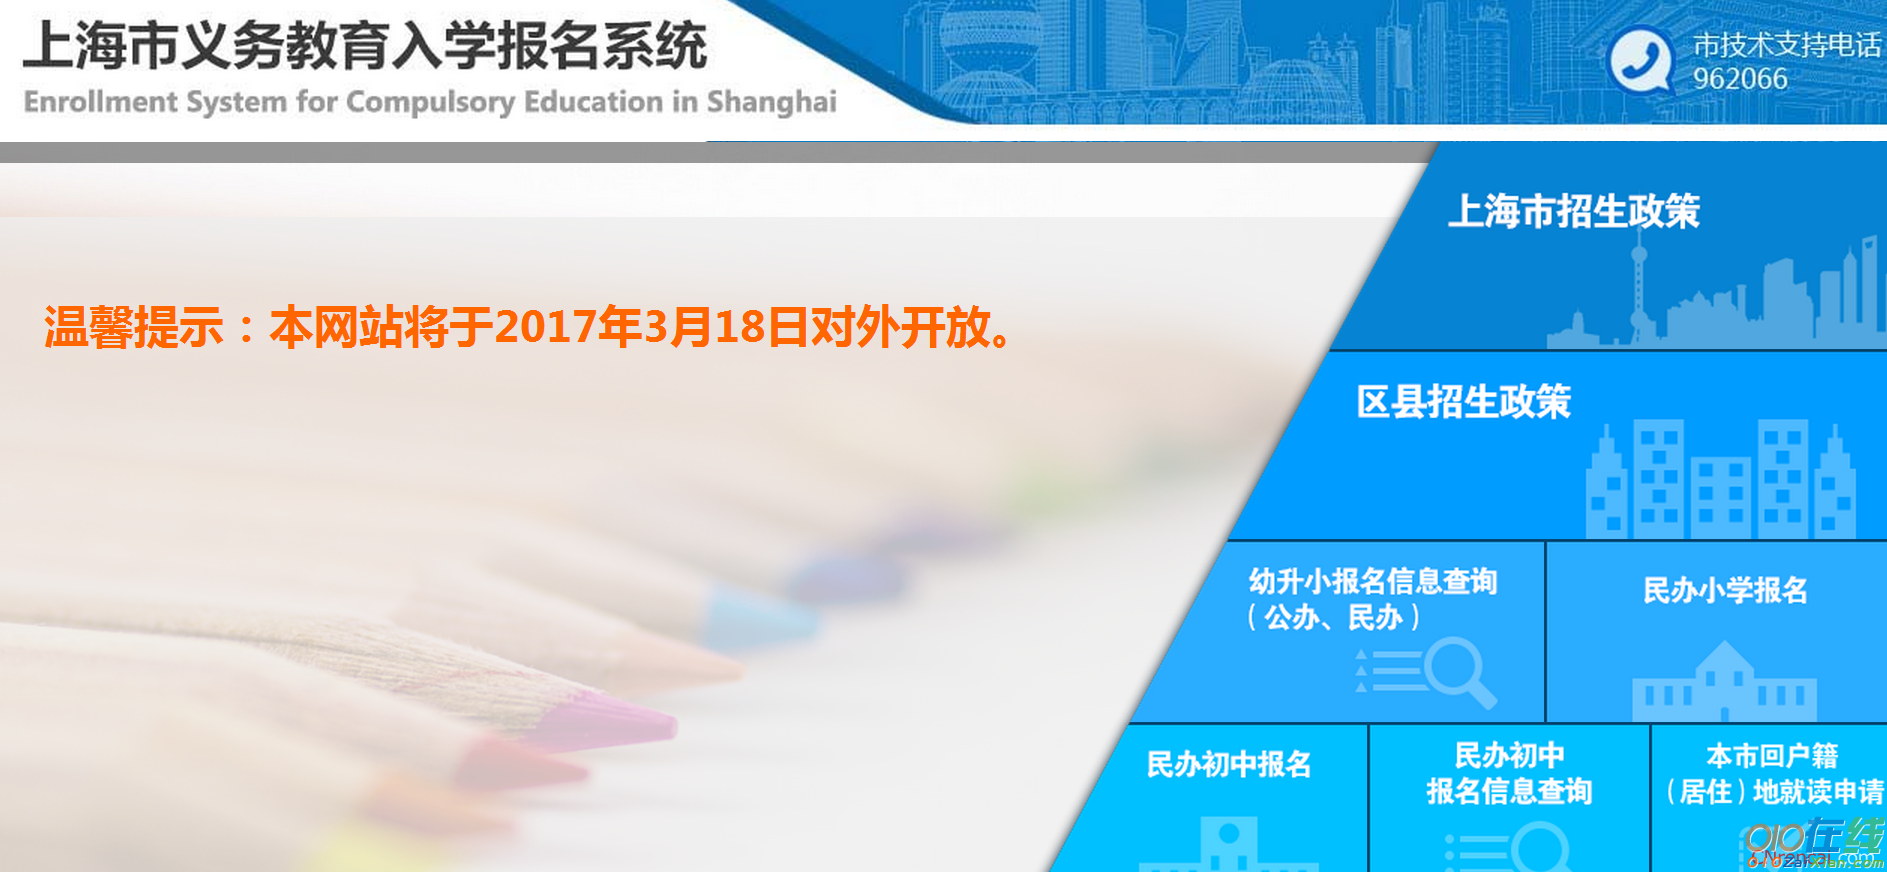 上海市义务教育入学报名系统「官网」